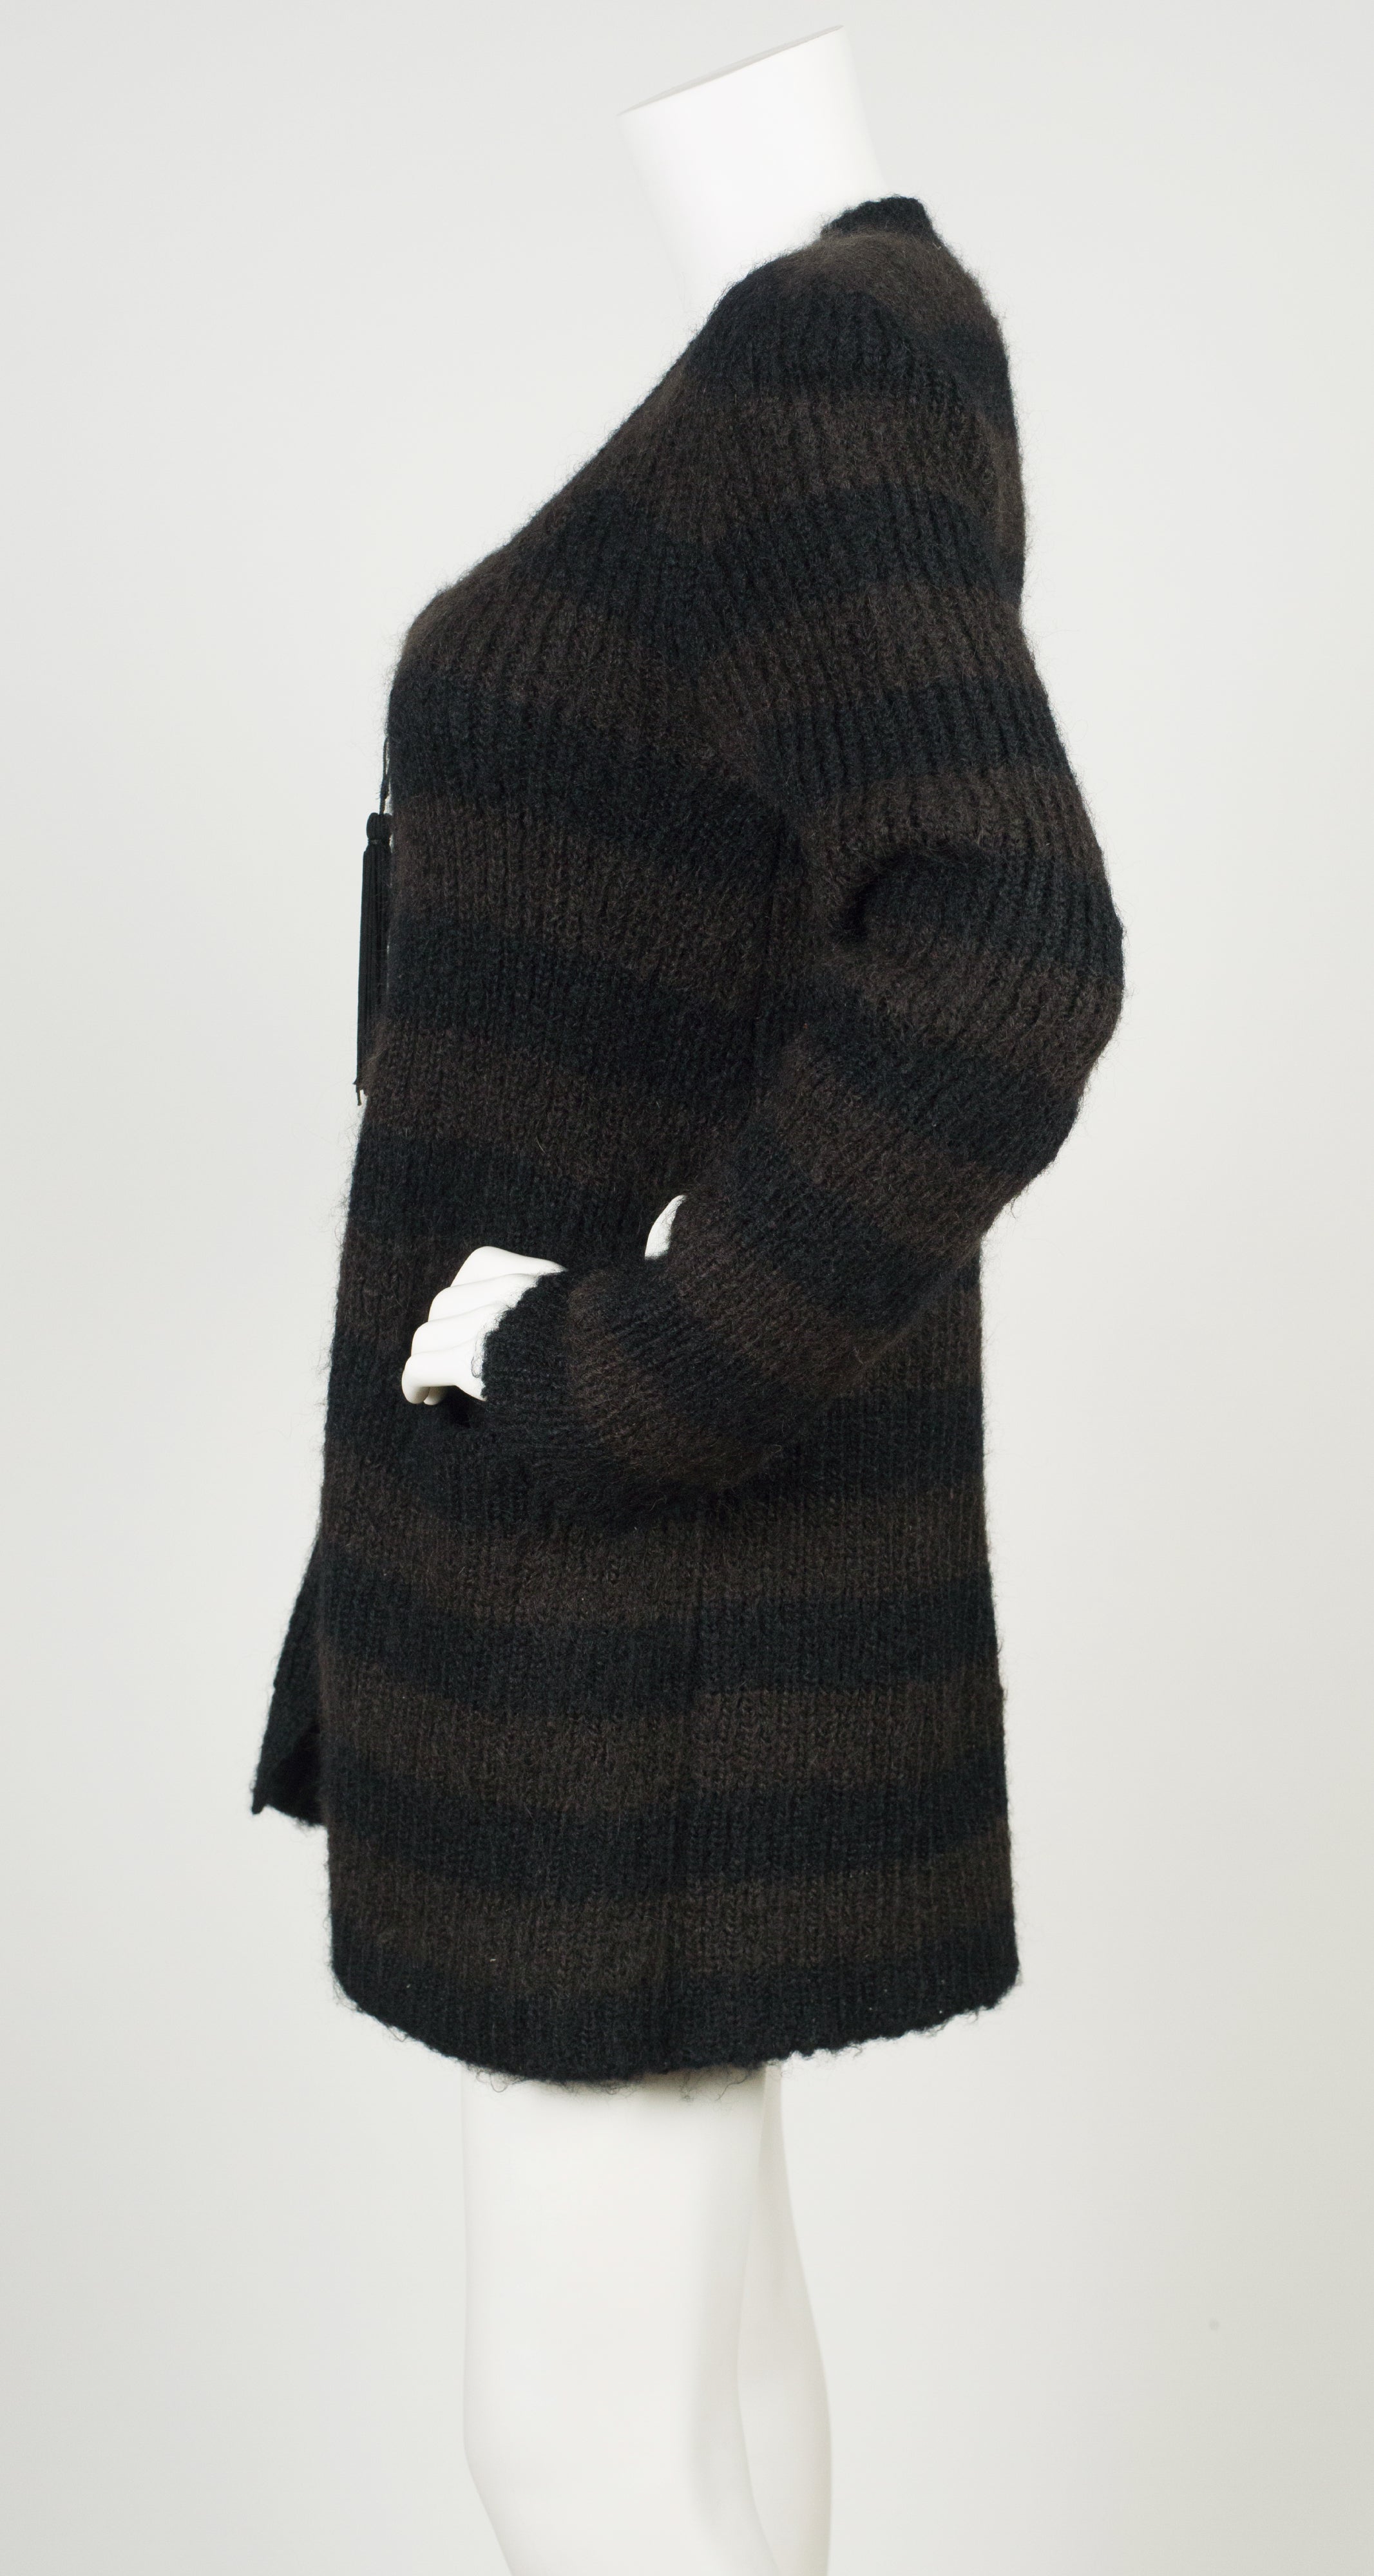 1970s Striped Brown & Black Wool Tassel Zip-Up Cardigan